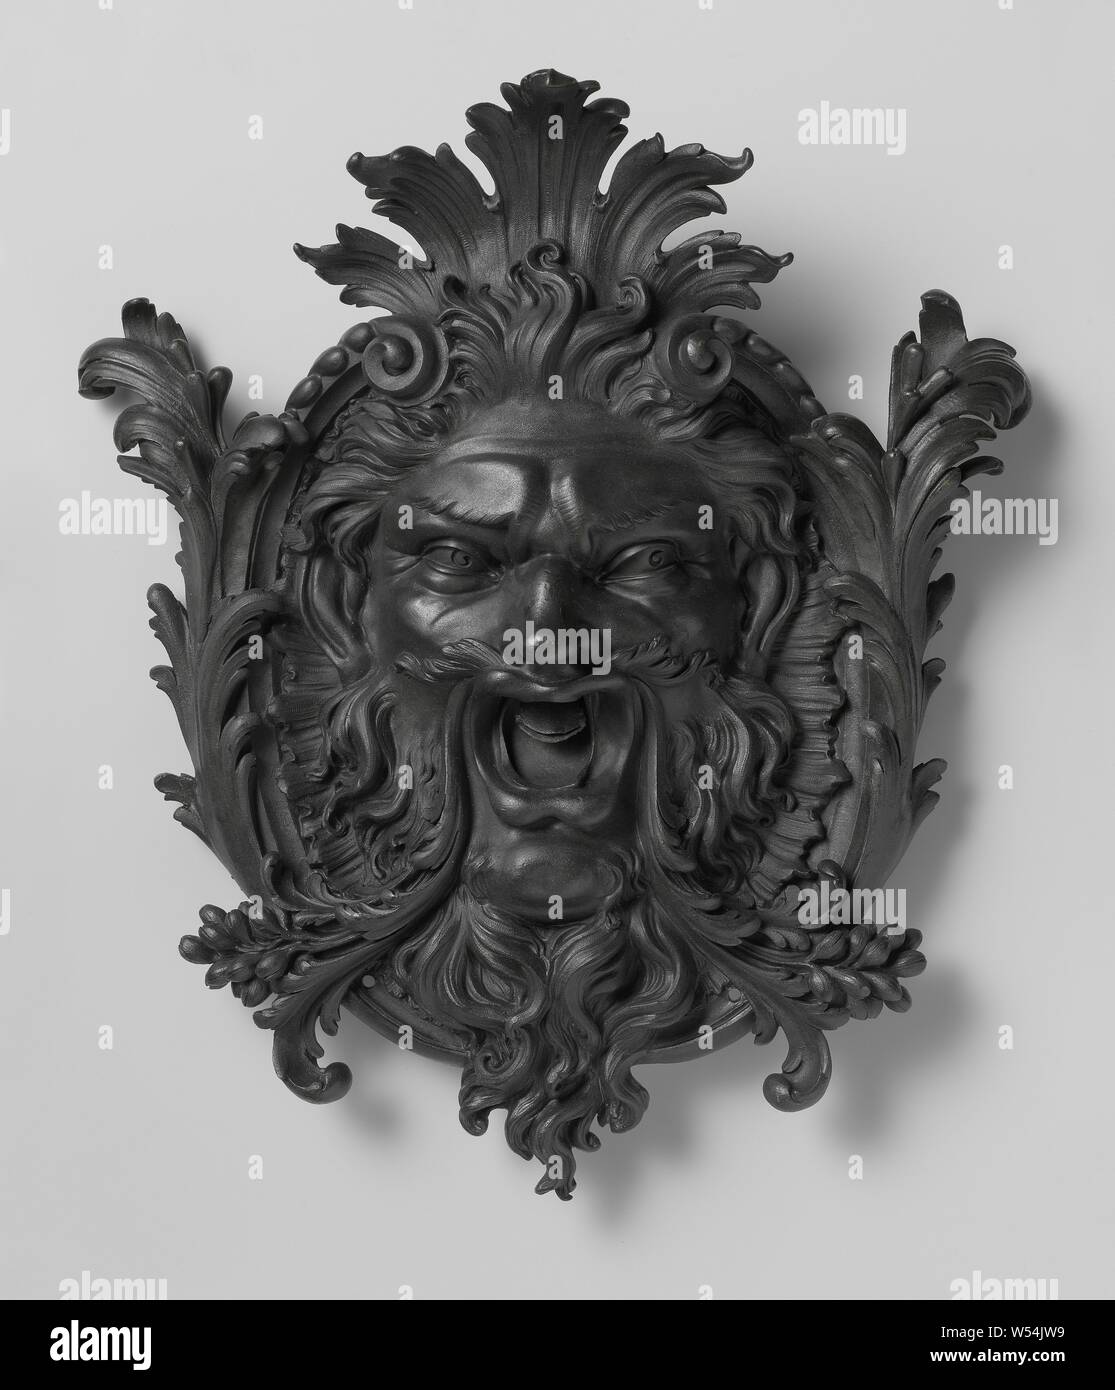 Mascaron, gargouille, la gargouille se compose d'une tête placée sur un cartouche et entouré de feuillages et fruits., anonyme, Paris (peut-être), ch. 1700 - c. 1720, bronze (métal), H 52 cm × 44 cm × w d 17 cm × w 11,2 kg Banque D'Images